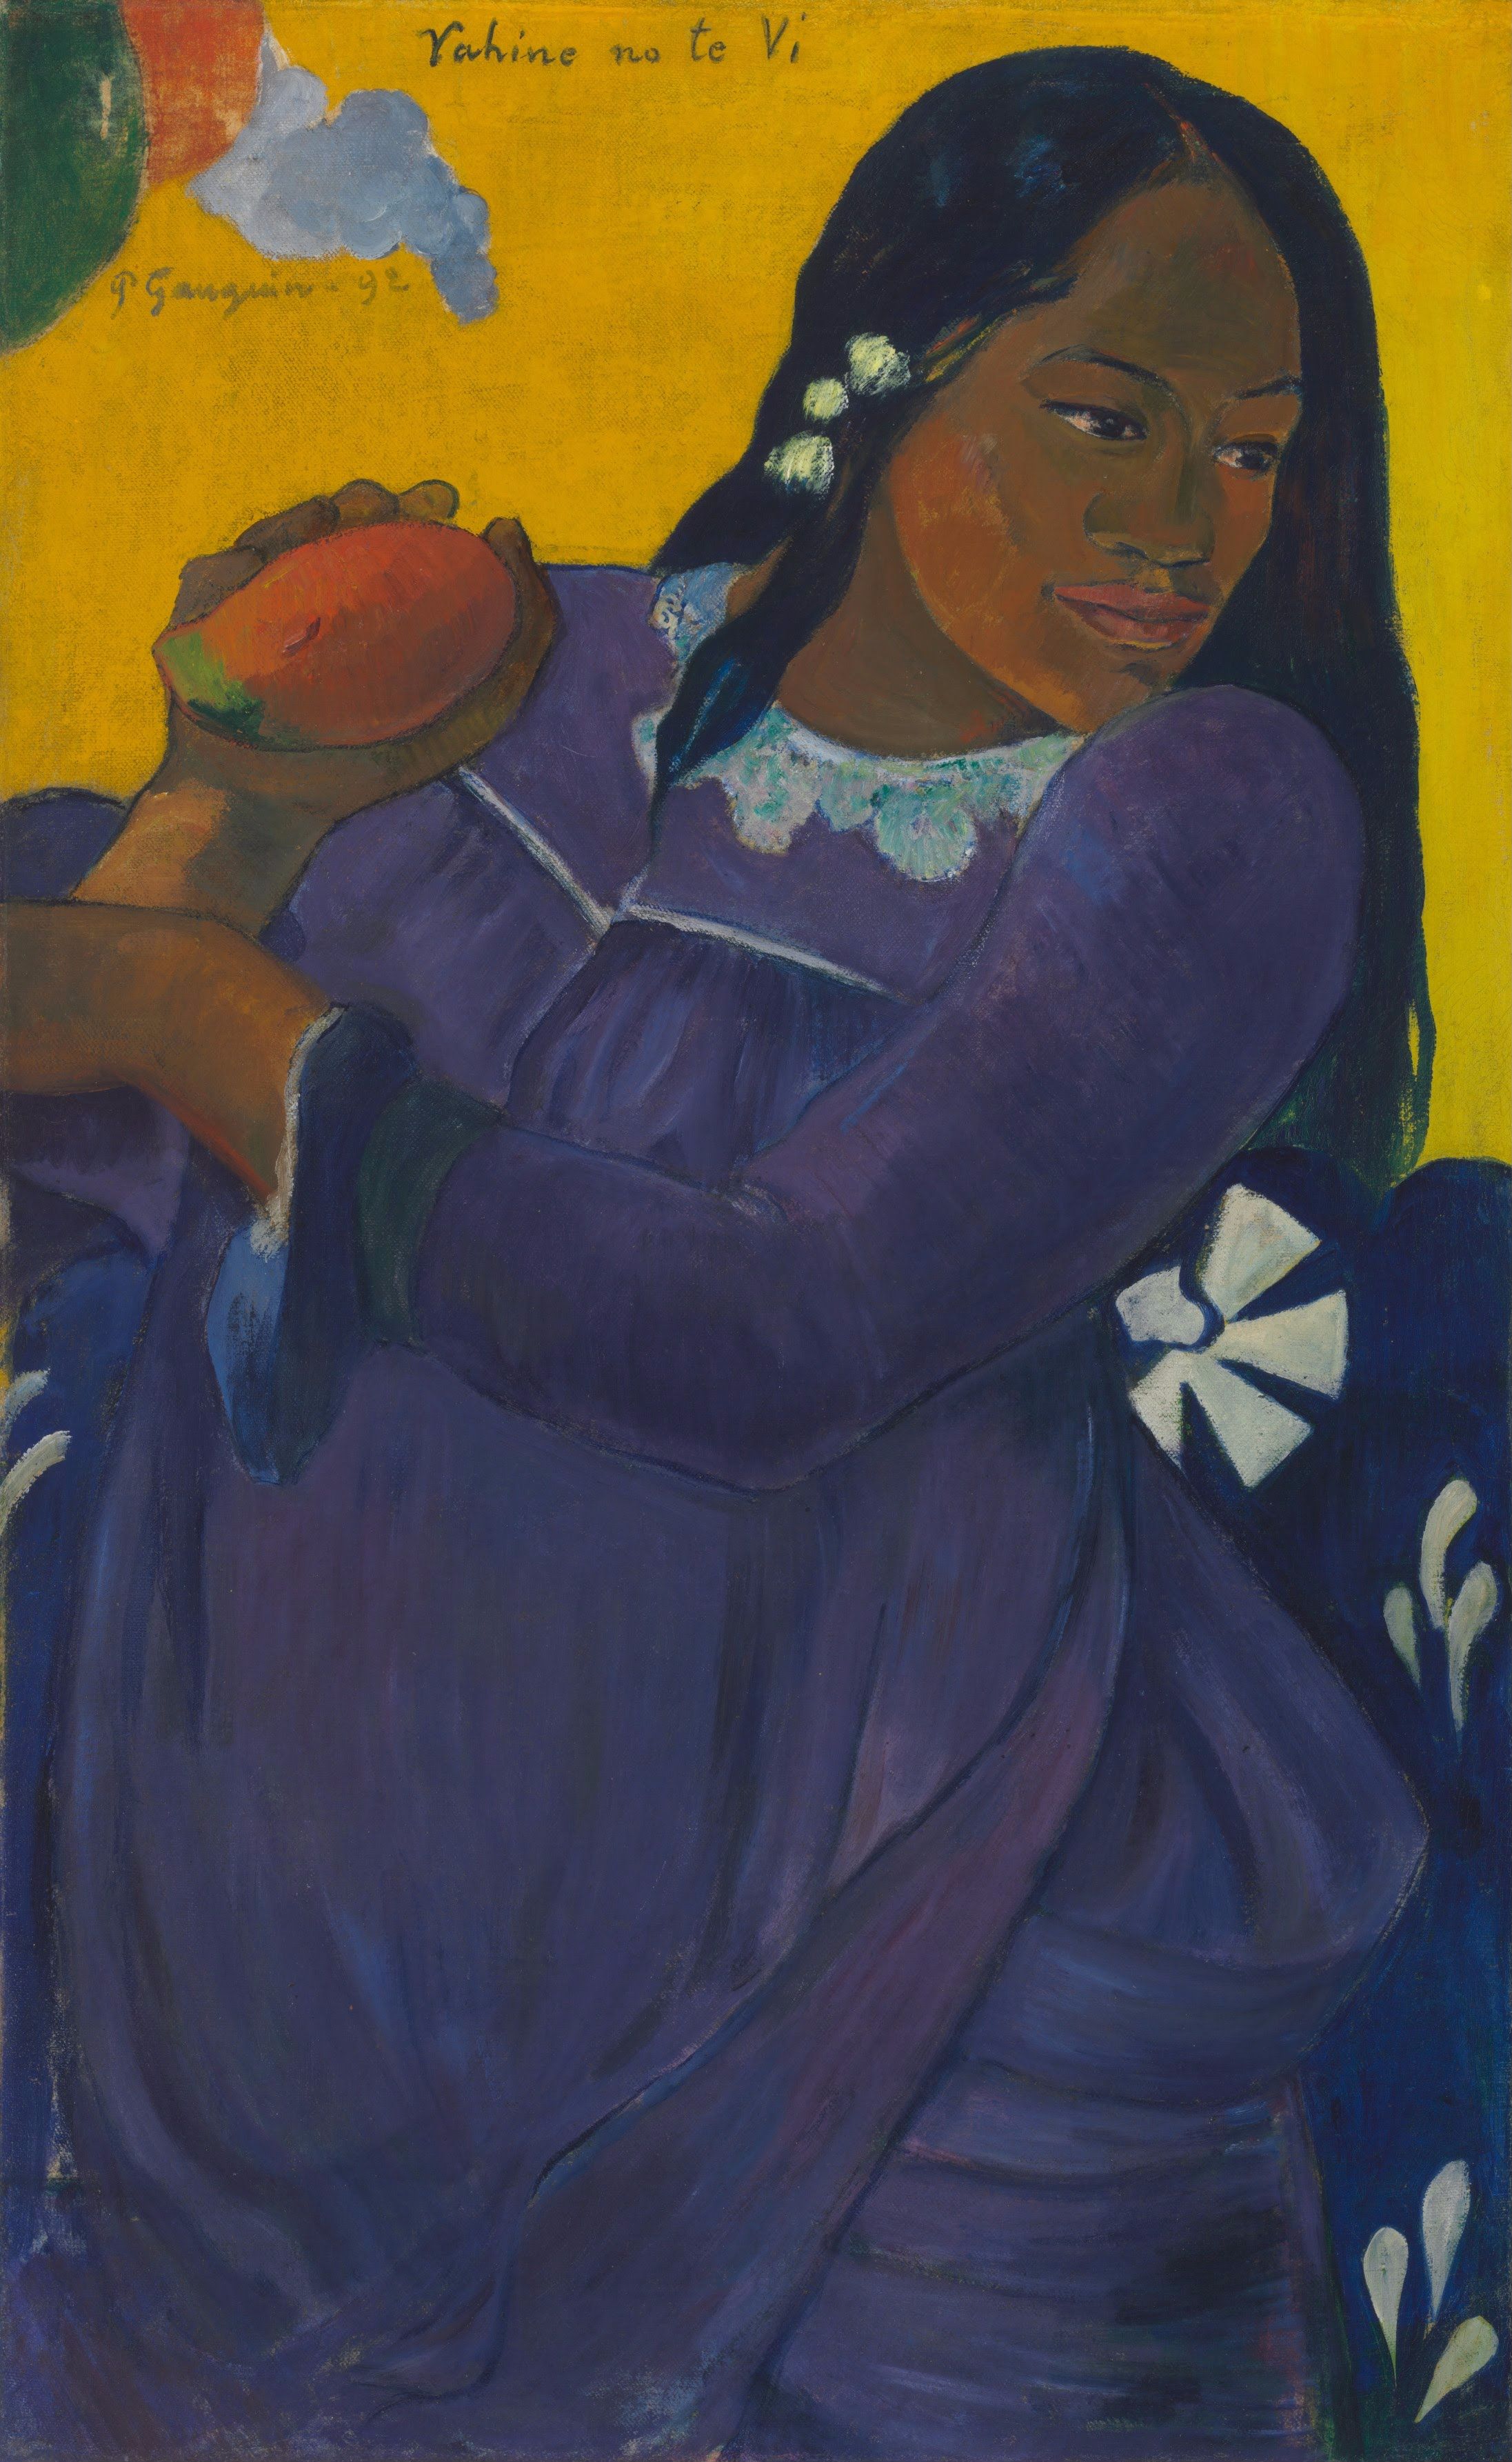 वाहिन नो ते वी (आम पकड़े हुई महिला) by Paul Gauguin - 1892 - 193.5 x 103 सेमी 